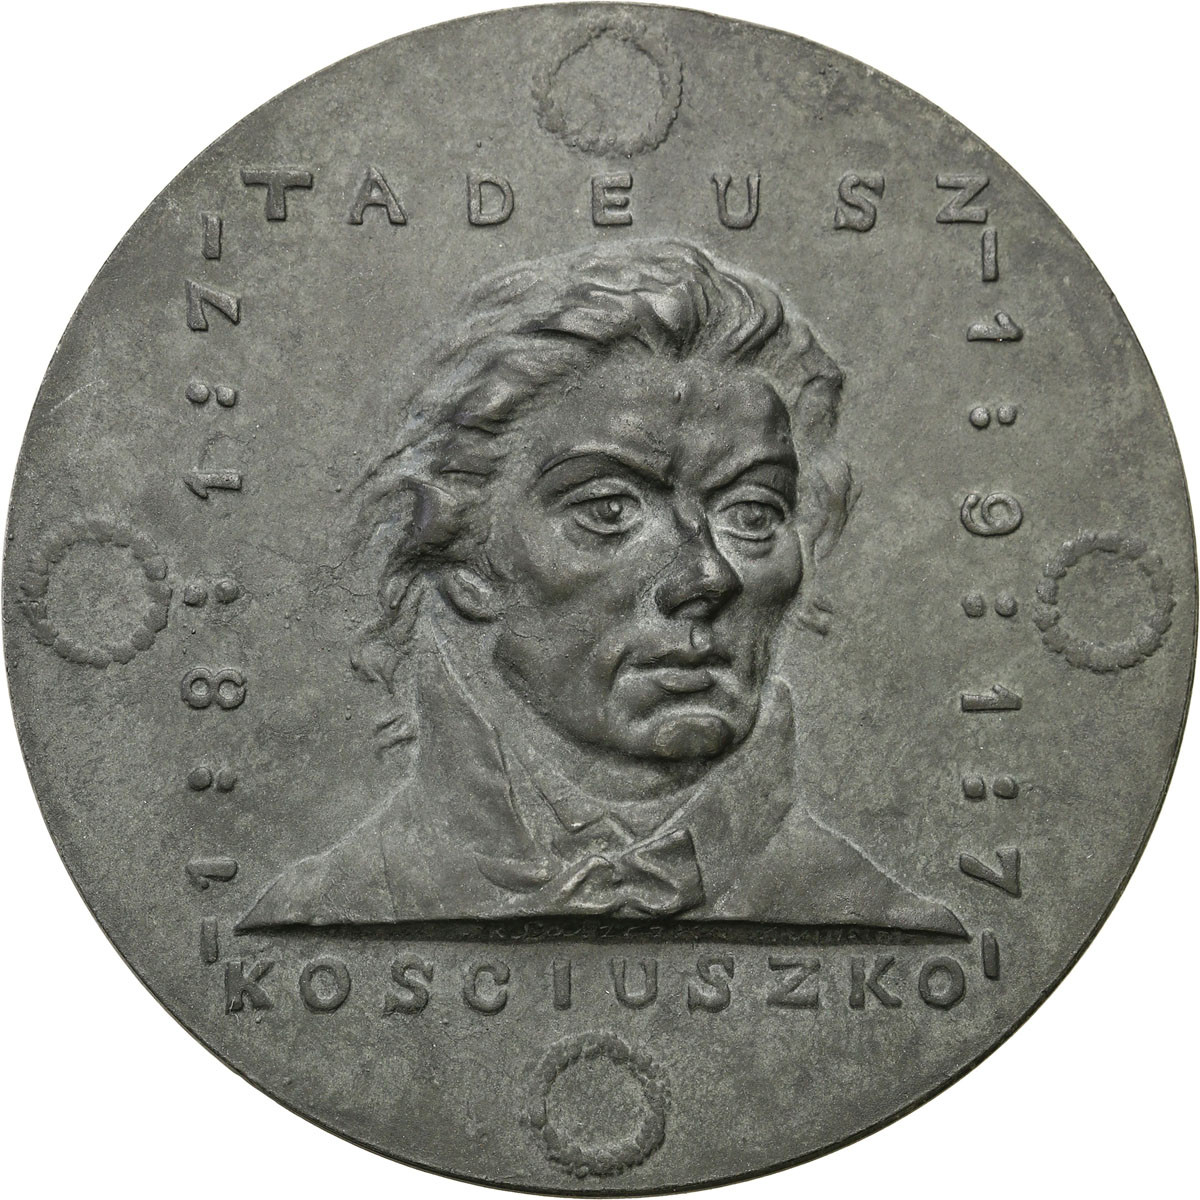 Polska pod zaborami. Medal 1917 - Tadeusz Kościuszko 1917, cynk